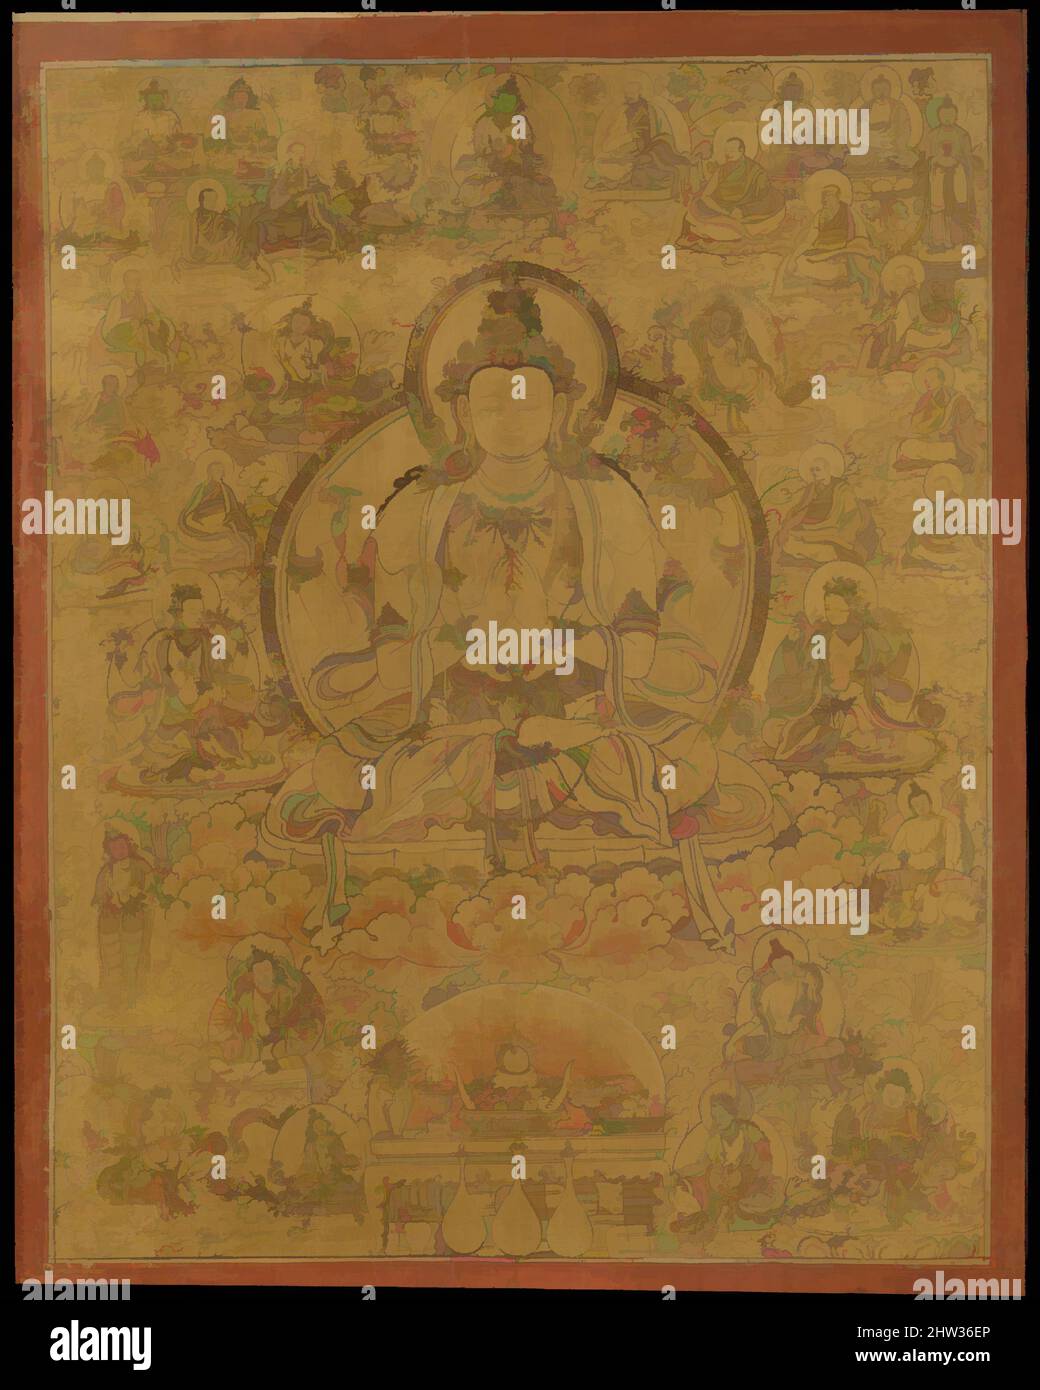 Kunst inspiriert von Sadaksari-Lokeshvara umgeben von Manifestationen und Mönchen, Ende des 15.. Jahrhunderts, Tibet, Gold, Tinte, Und Farbe auf Stoff, Bild: 40 3/8 x 31 1/4 Zoll (102,6 x 79,4 cm), Gemälde, Dieses Gemälde stellt die „sechssilbige Form“ von Avalokiteshvara dar und erinnert an das Mantra om, klassische Werke, die von Artotop mit einem Schuss Moderne modernisiert wurden. Formen, Farbe und Wert, auffällige visuelle Wirkung auf Kunst. Emotionen durch Freiheit von Kunstwerken auf zeitgemäße Weise. Eine zeitlose Botschaft, die eine wild kreative neue Richtung verfolgt. Künstler, die sich dem digitalen Medium zuwenden und die Artotop NFT erschaffen Stockfoto